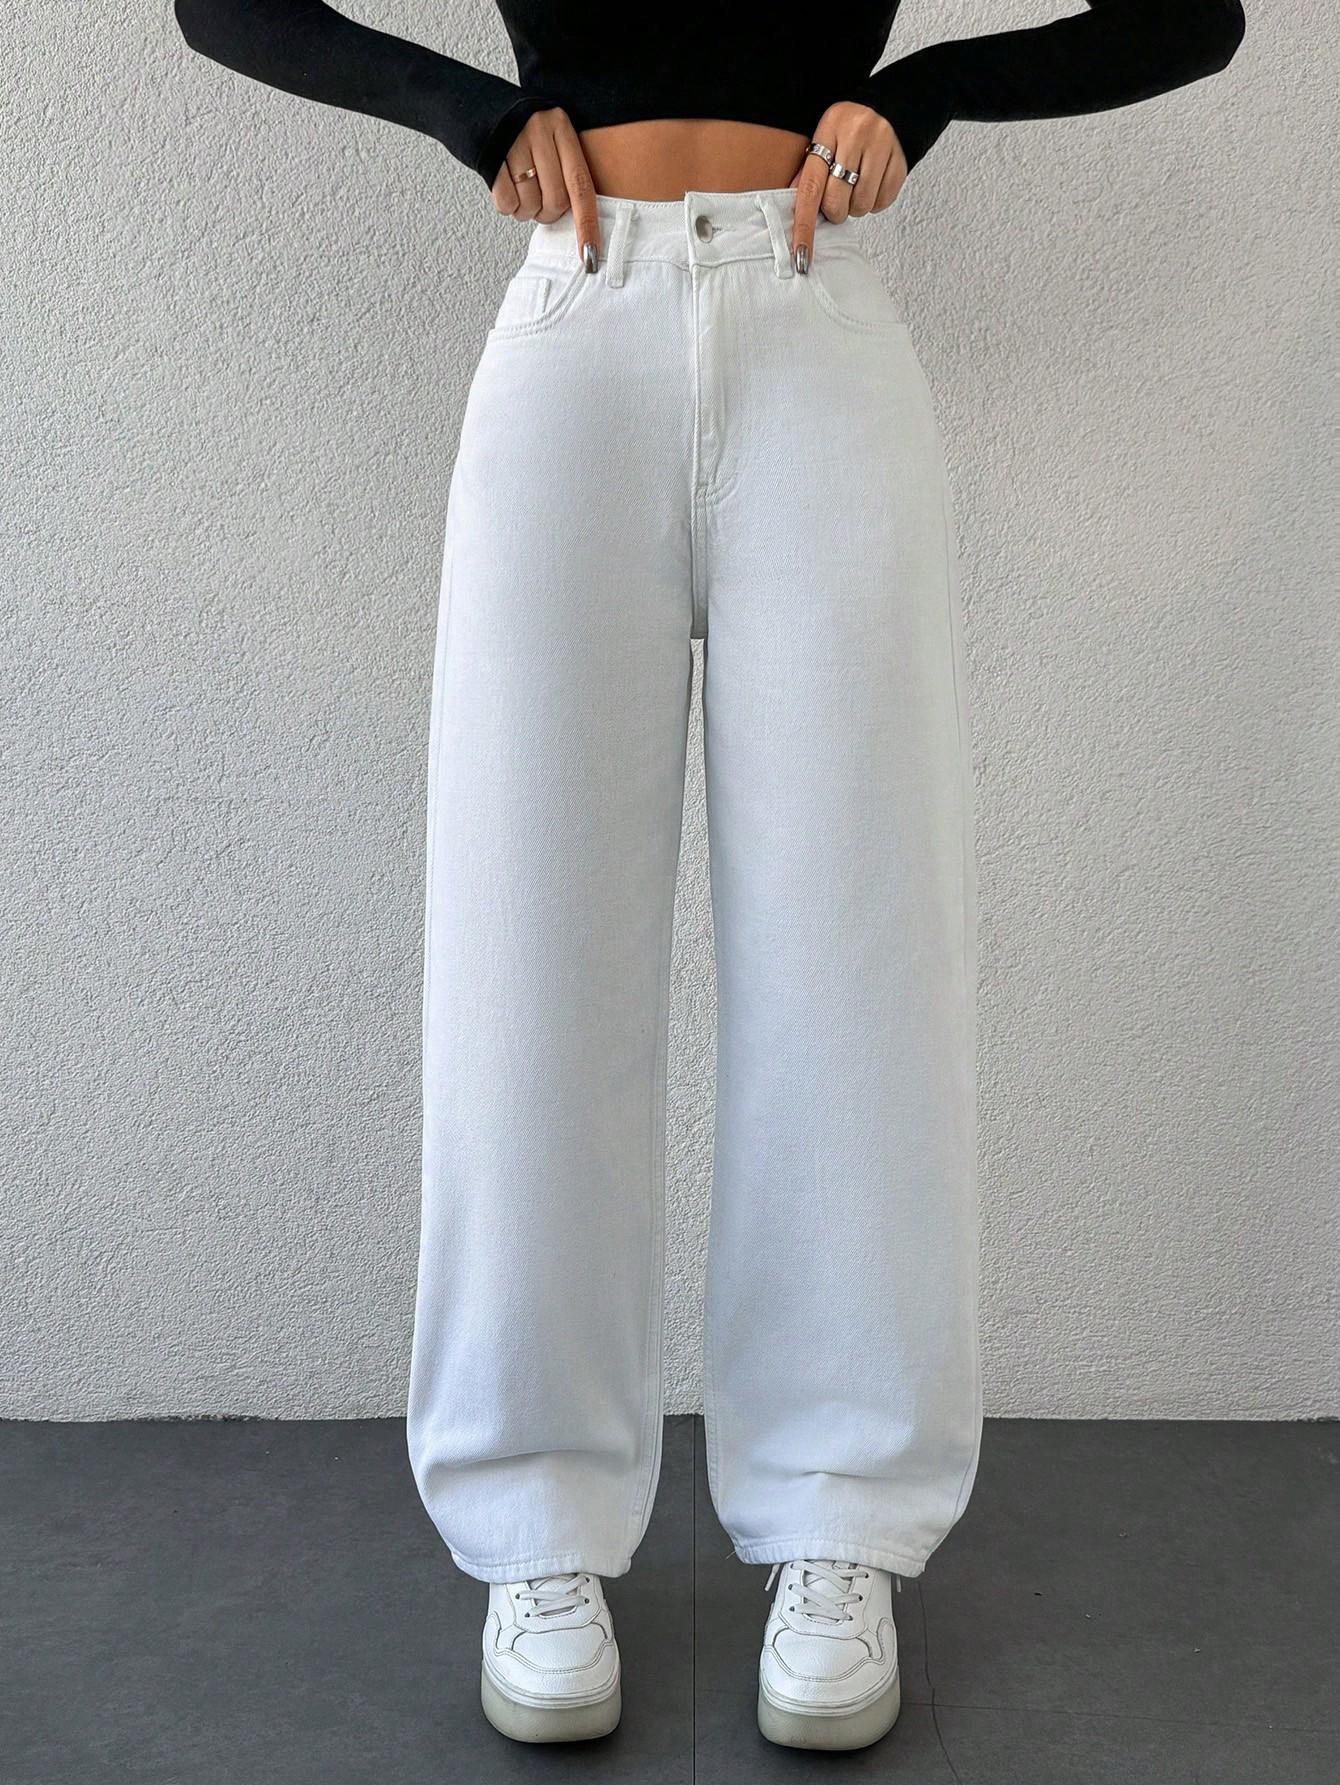  białe spodnie jeans wysoki stan 